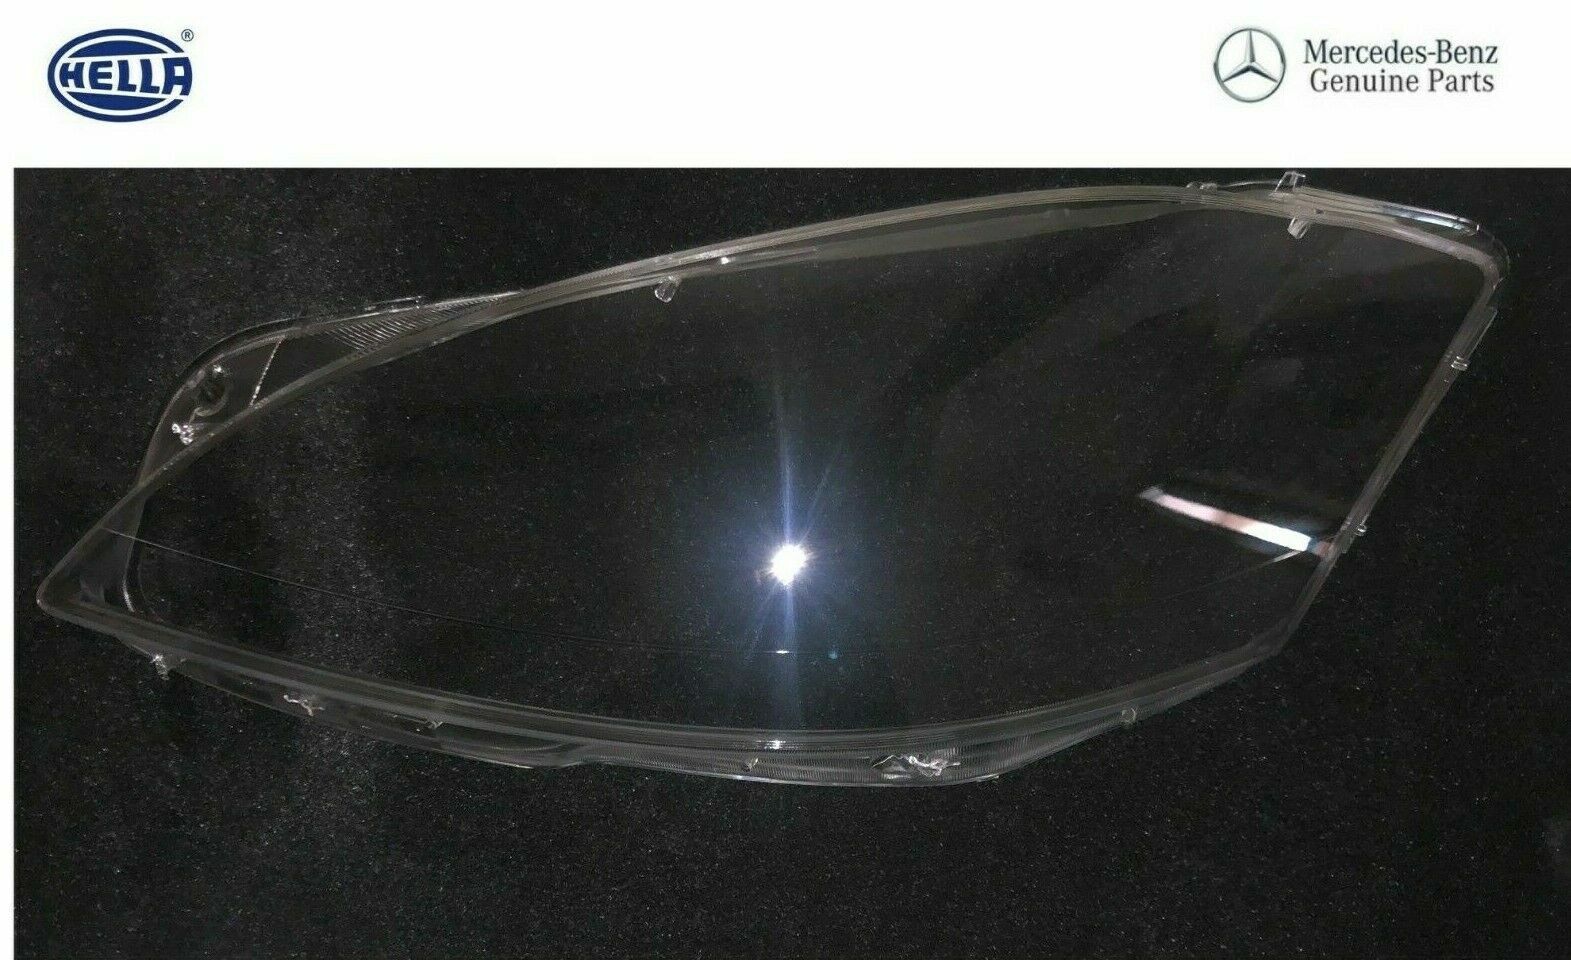 Mercedes W221 S550 S500 S600 S350 S63 S65 AMG Headlight Lens Cover Left Oem New 